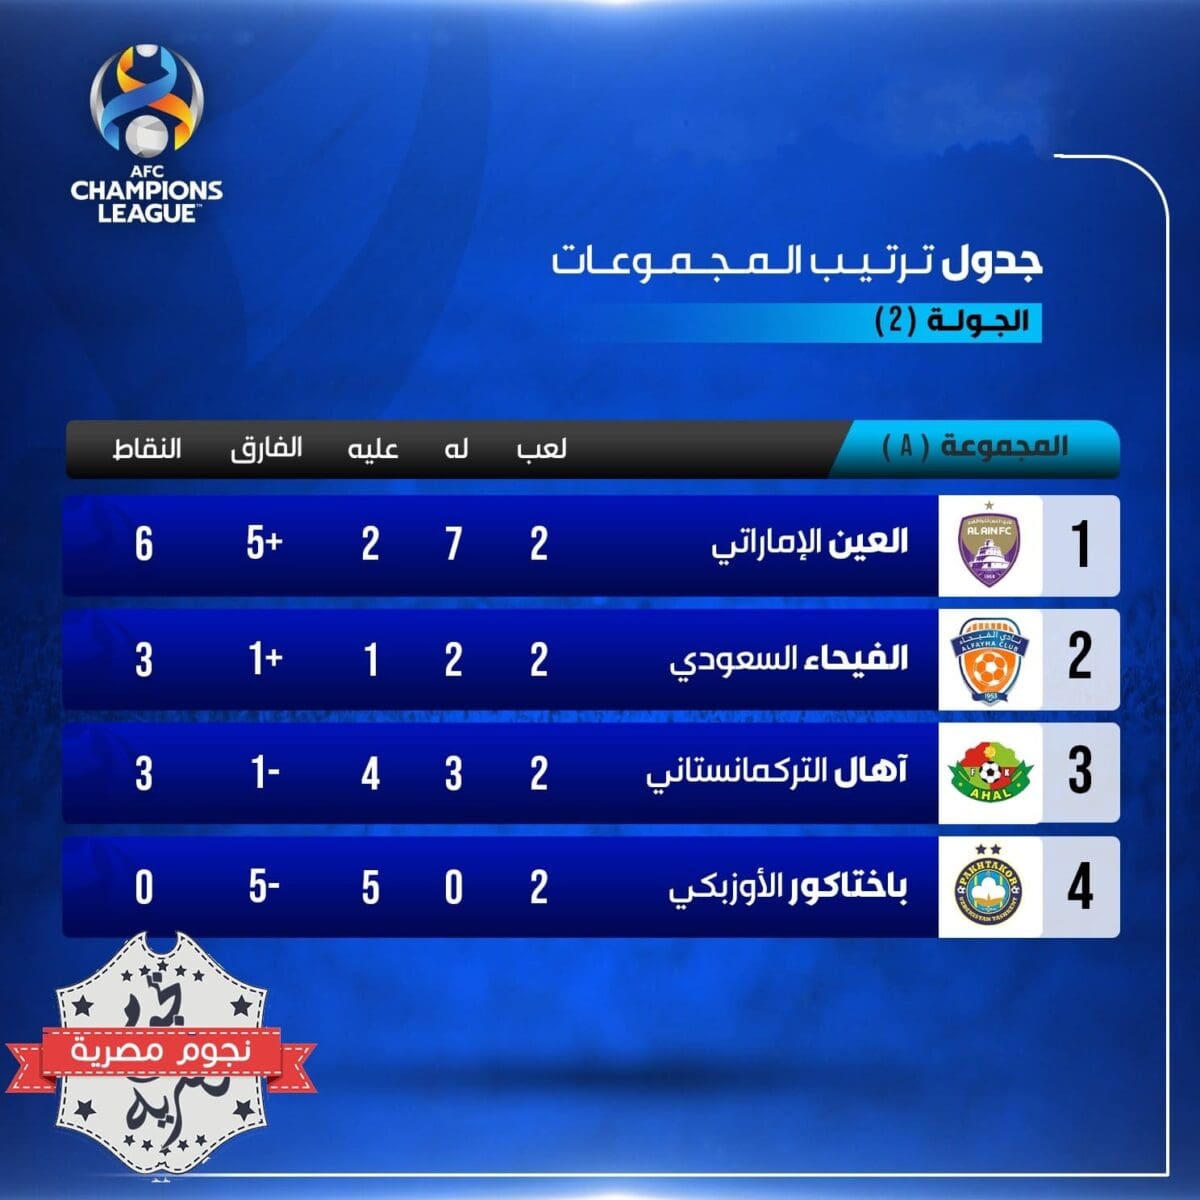 جدول ترتيب المجموعة الأولى A في دوري أبطال آسيا بعد نهاية الجولة الثانية (مصدر الصورة. القنوات الرياضية السعودية تويتر)